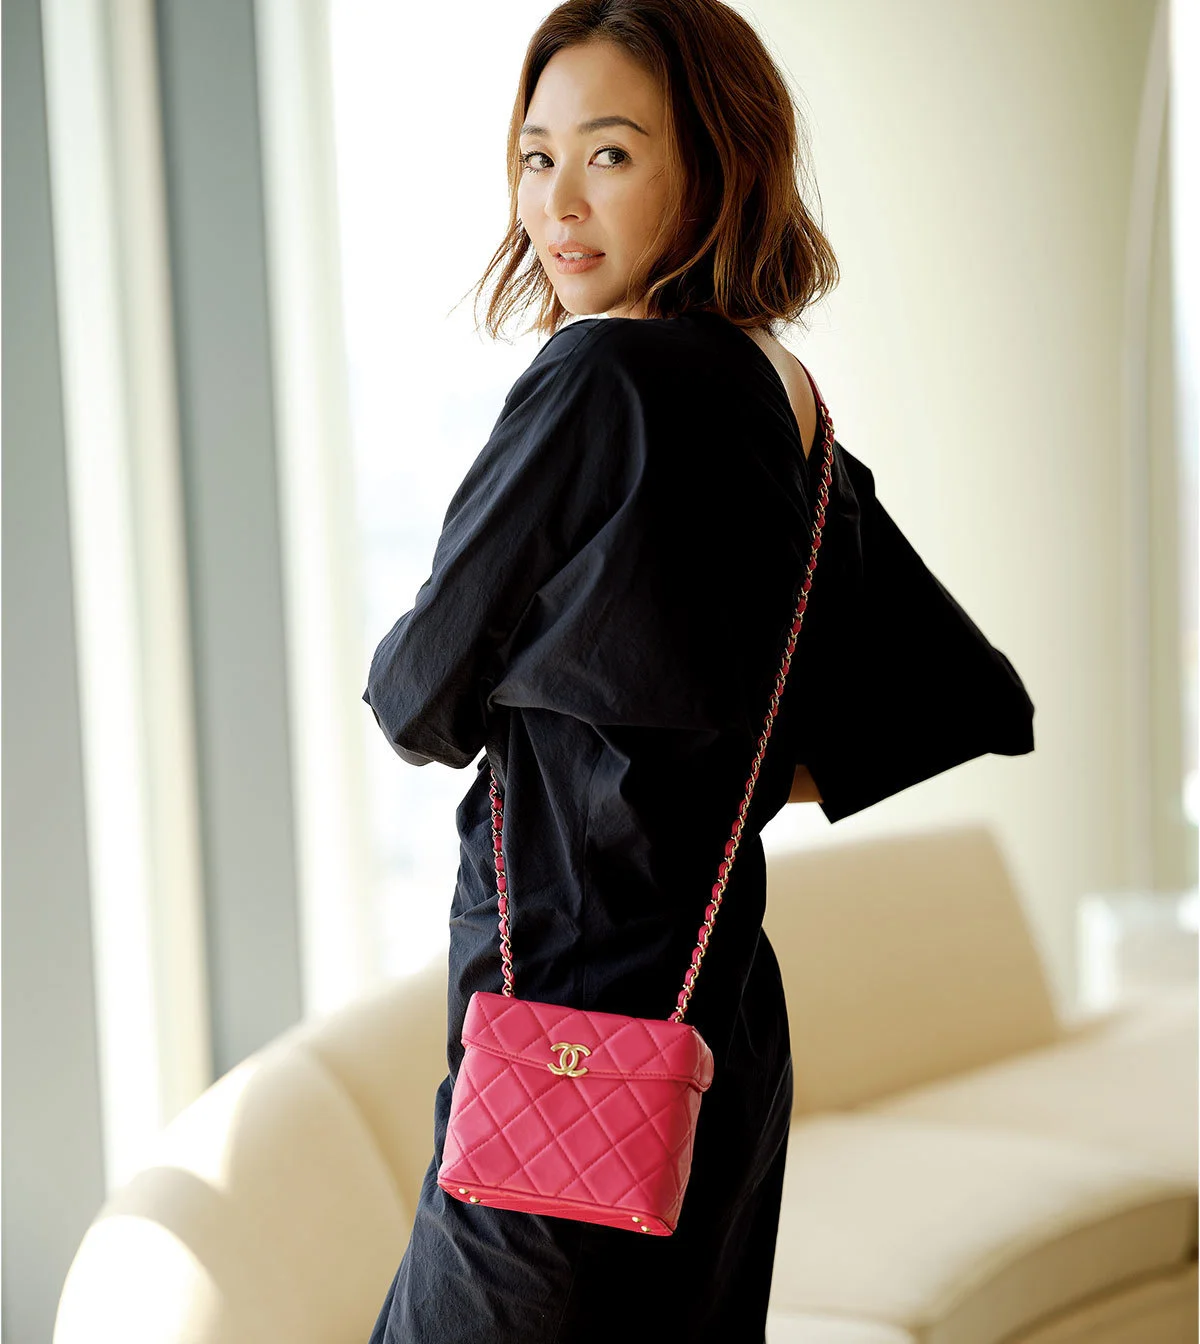 ■CHANEL フューシャピンクのチェーンバッグを持つモデル・SHIHO